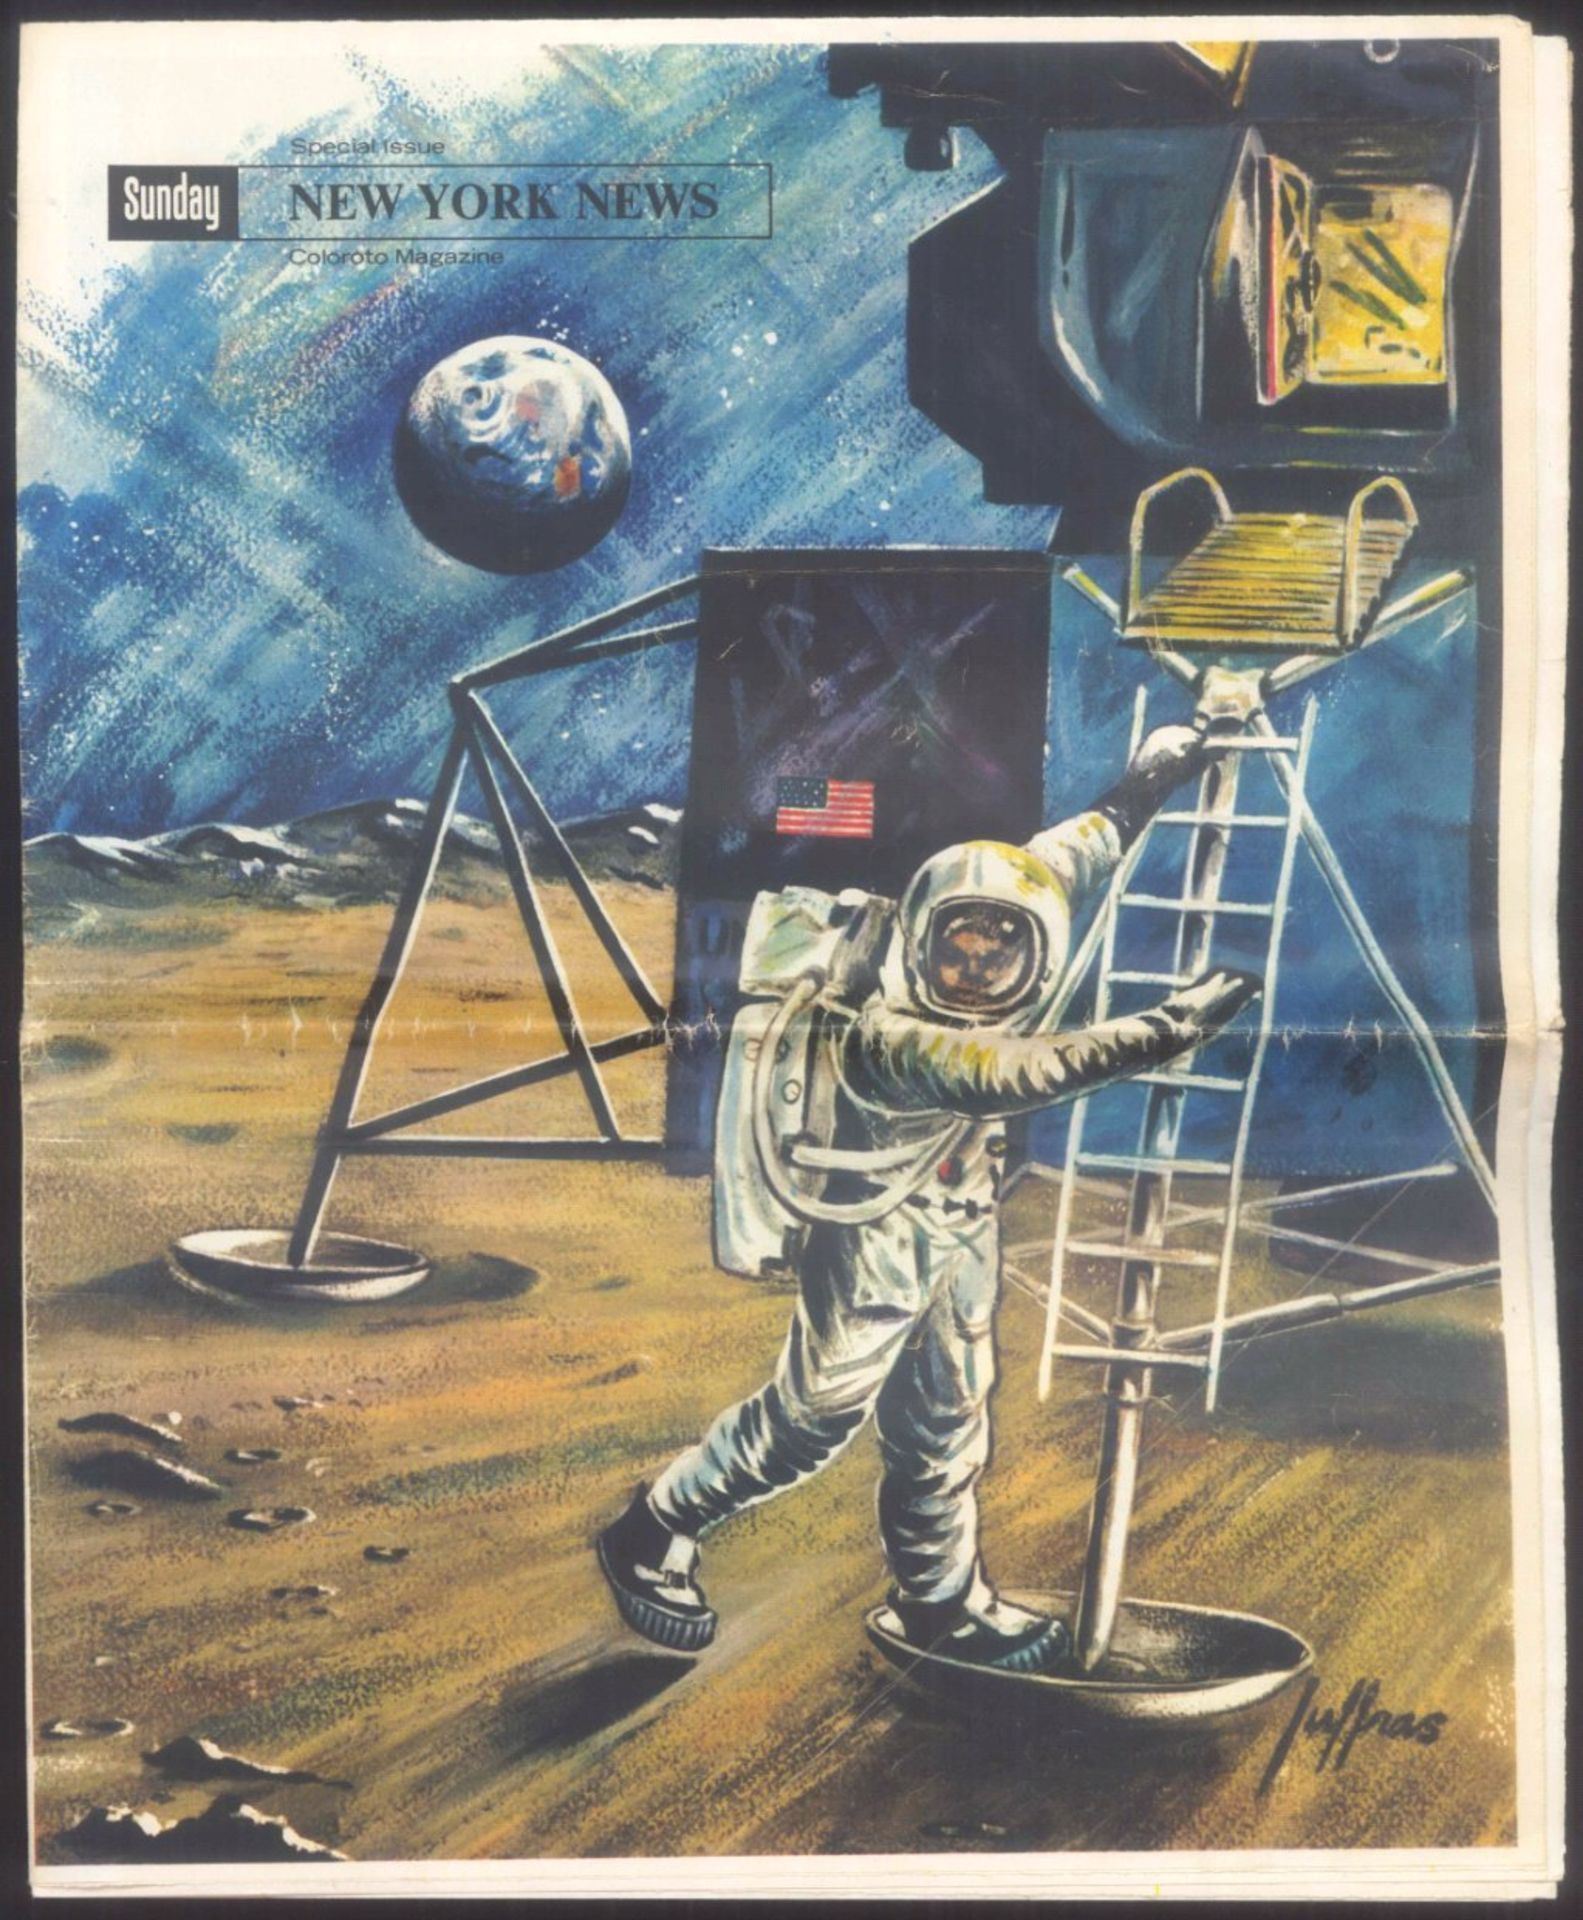 New York News, Special Issue, Apollo 11 MondlandungVom 25 May 1961, sehr guter Zustand, Knickfalte